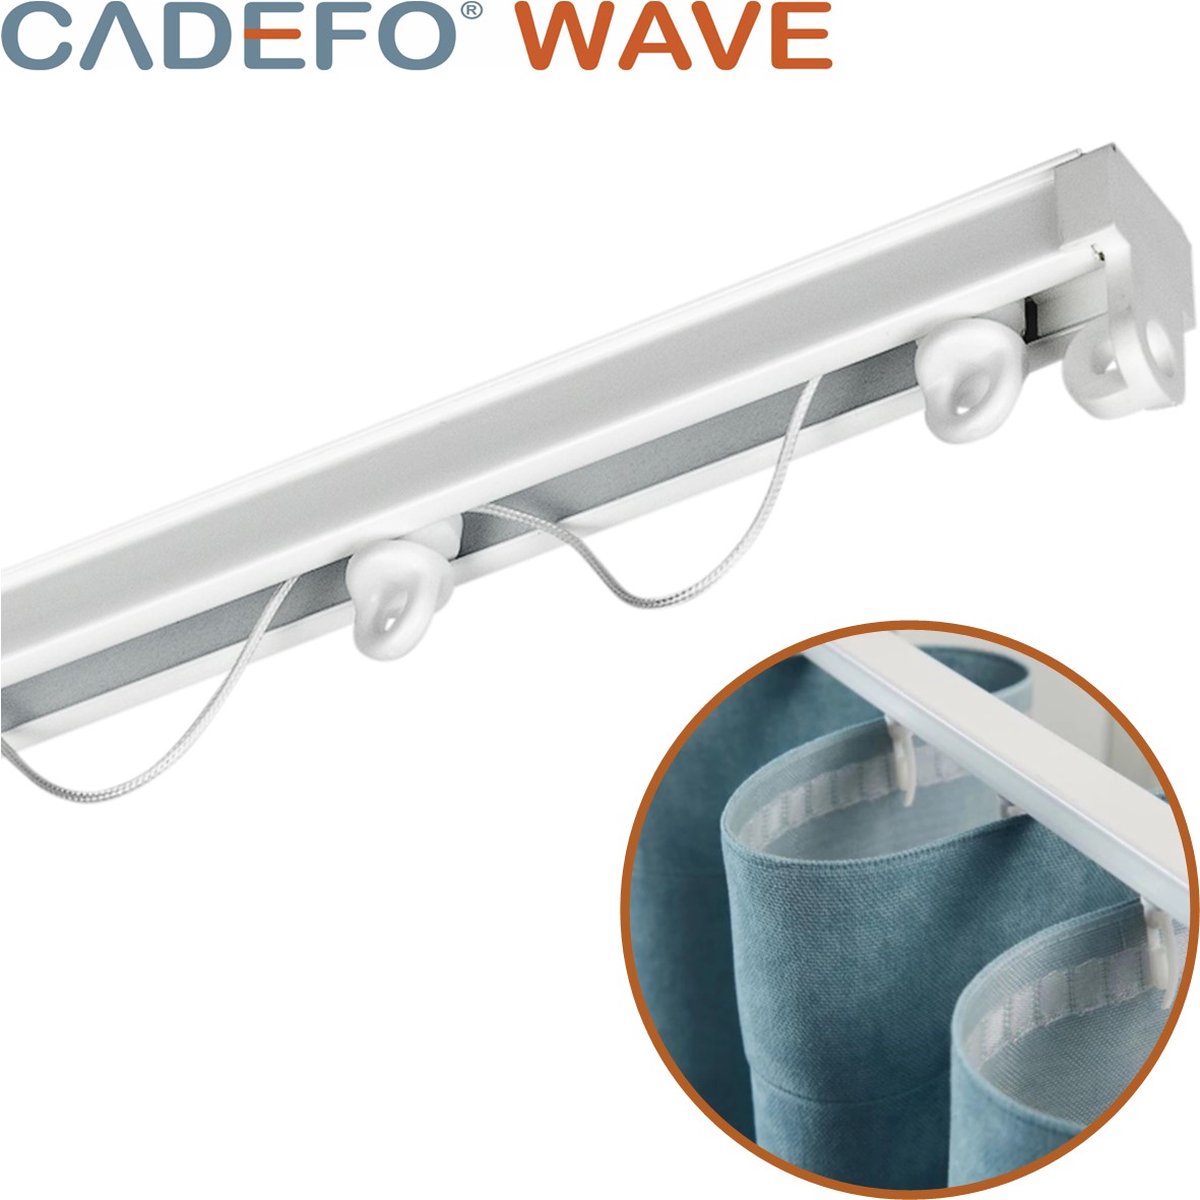 CADEFO WAVE (301 - 350 cm) Gordijnrails - Compleet op maat! - UIT 1 STUK - Leverbaar tot 6 meter - Plafondbevestiging - Lengte 320 cm